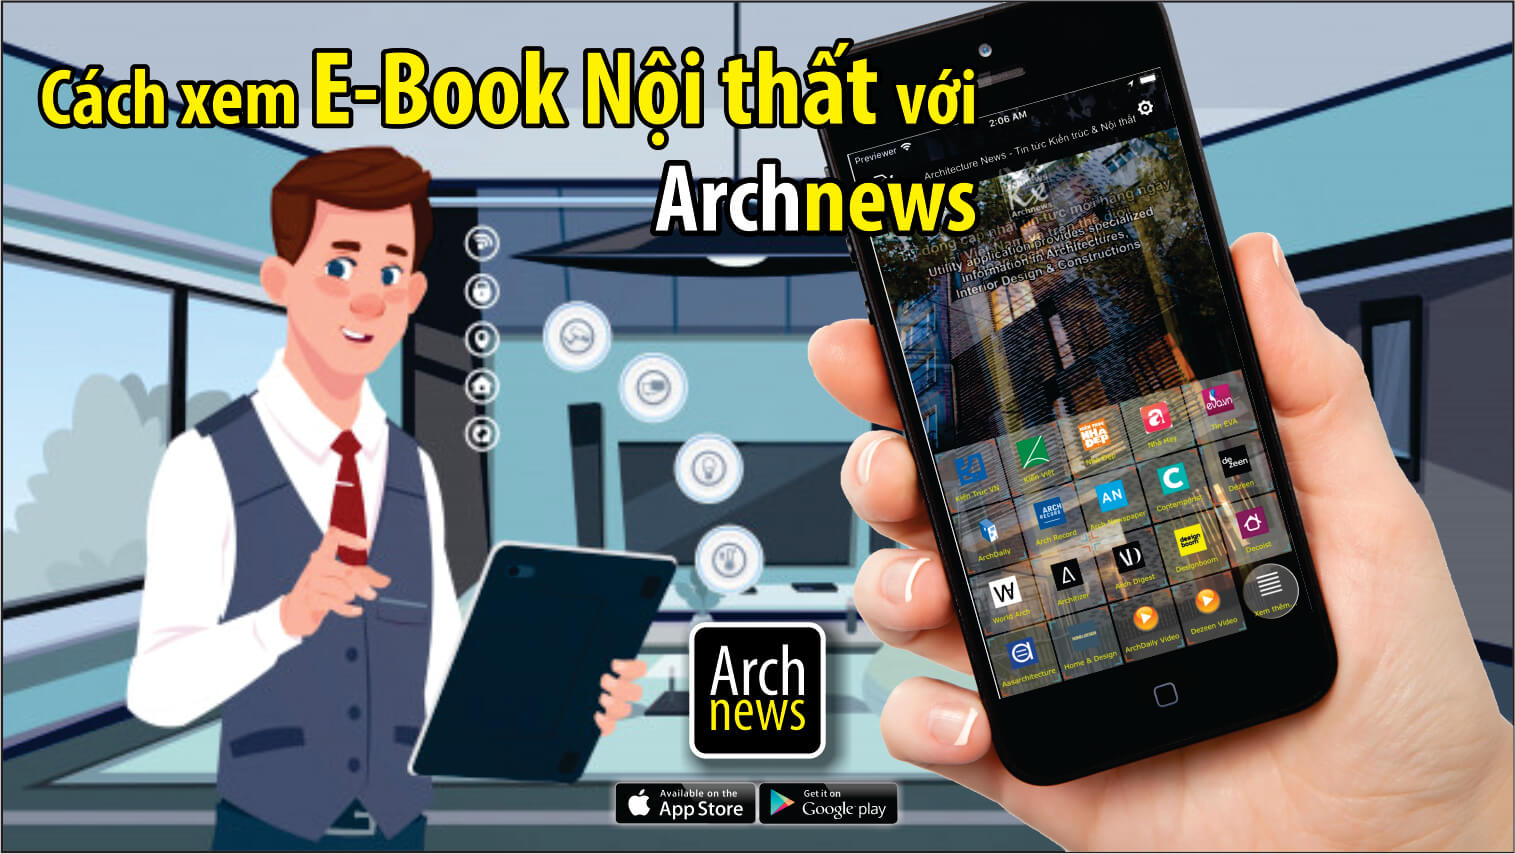 Cách xem và tải Sách E-Book Nội thất miễn phí với Archnews